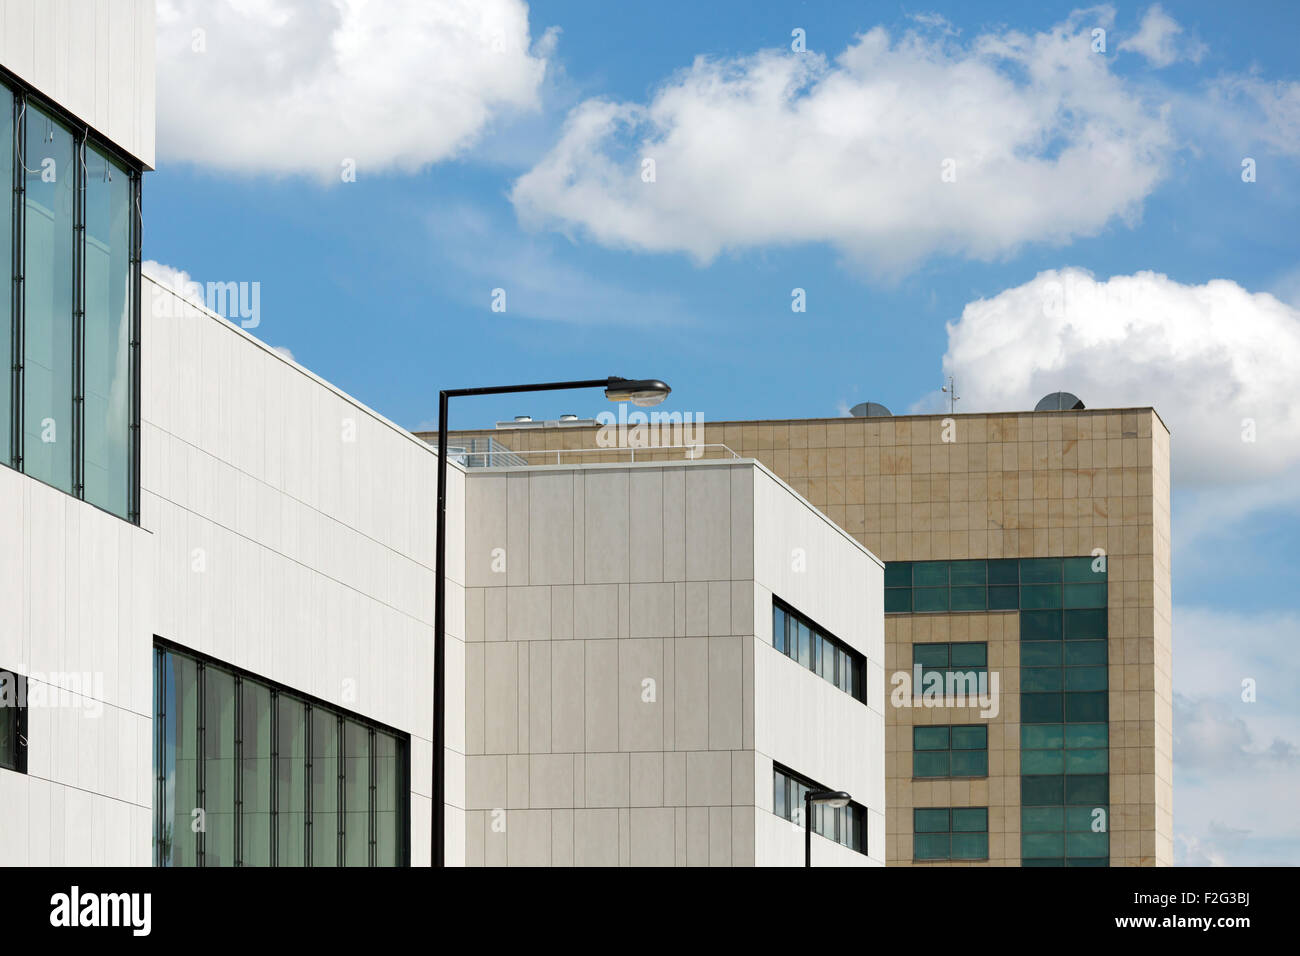 21.05.2013, Wroclaw, Bassa Slesia, Polonia - Nuovo edificio Politechnika Wroclawska (Università tecnica di Wroclaw). Foto Stock